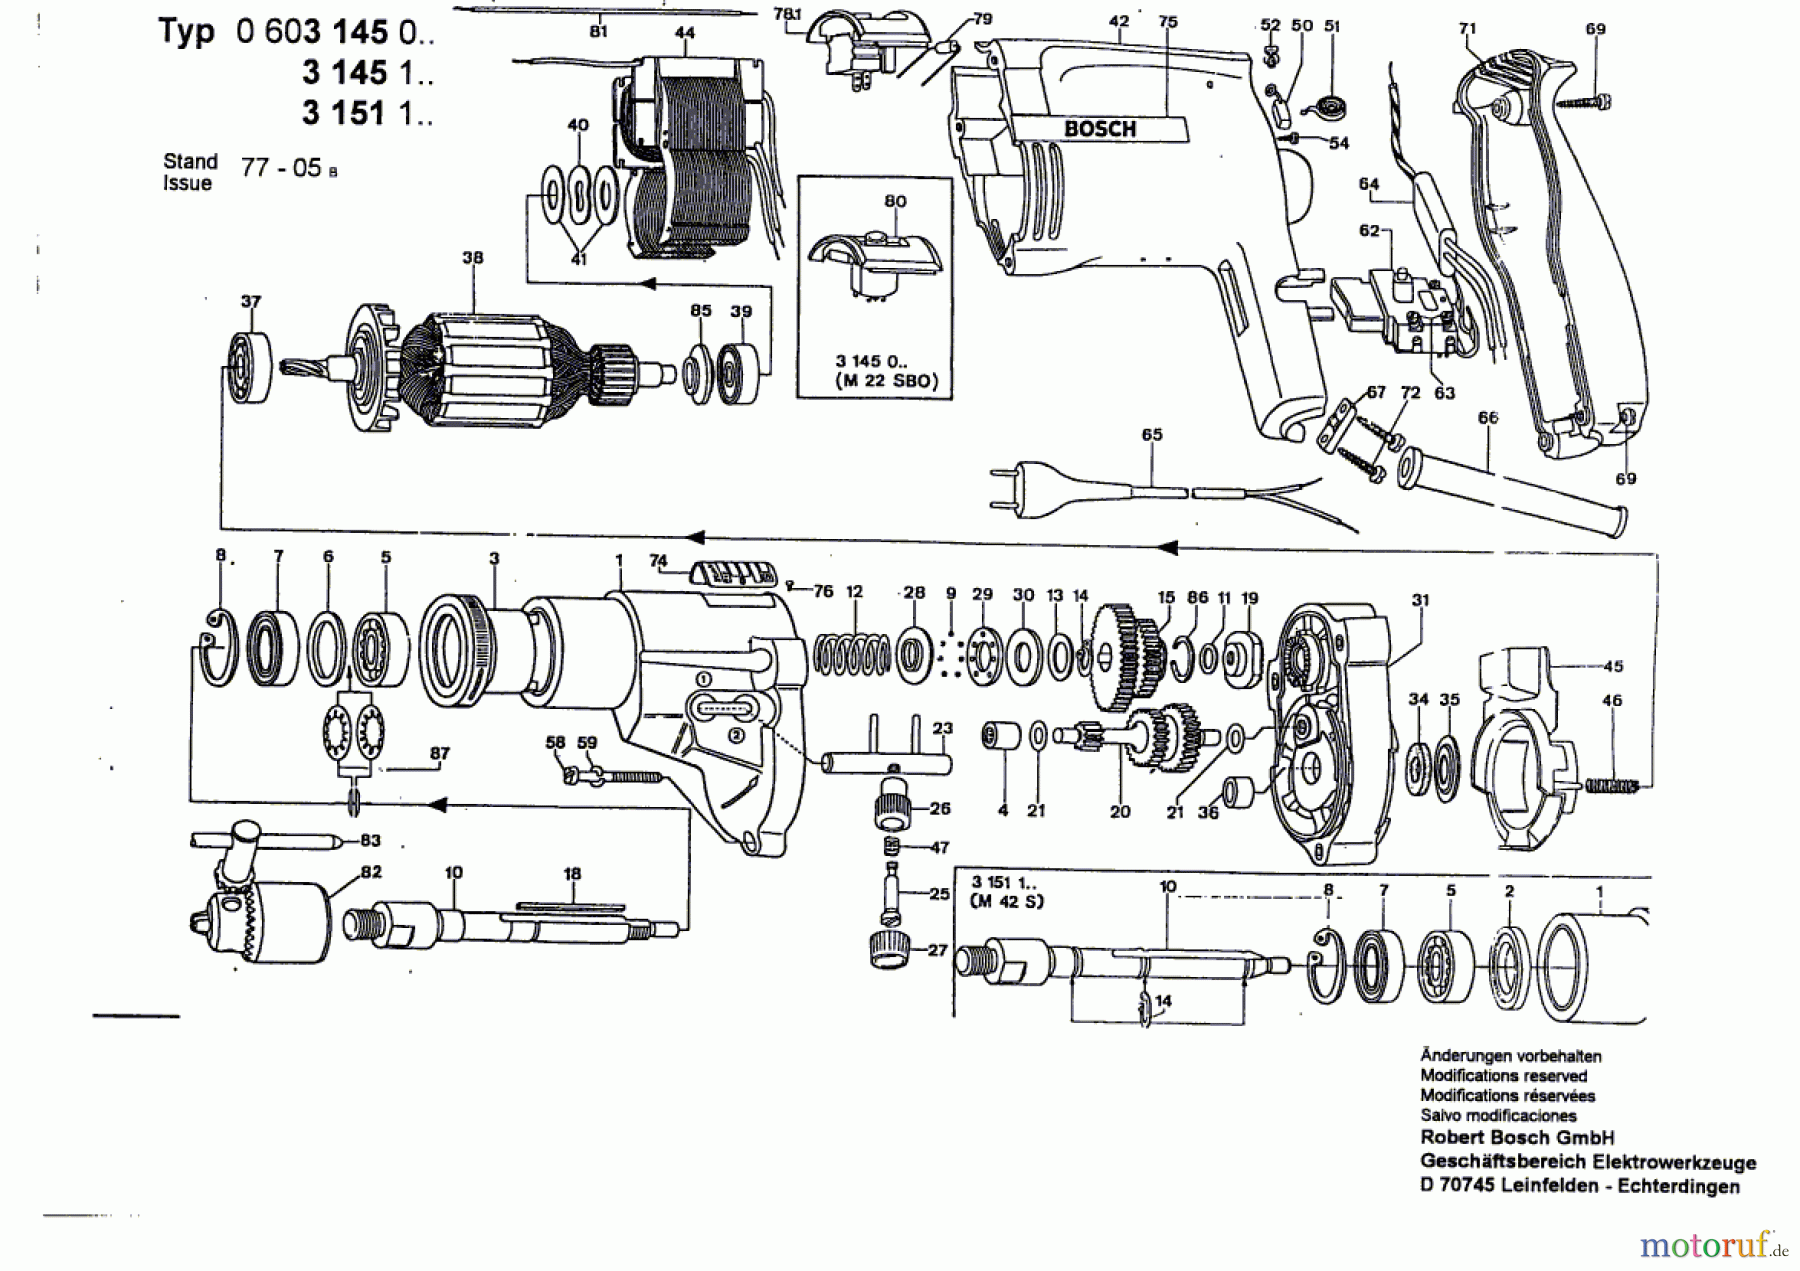  Bosch Werkzeug Schlagbohrmaschine M 22 SBO Seite 1